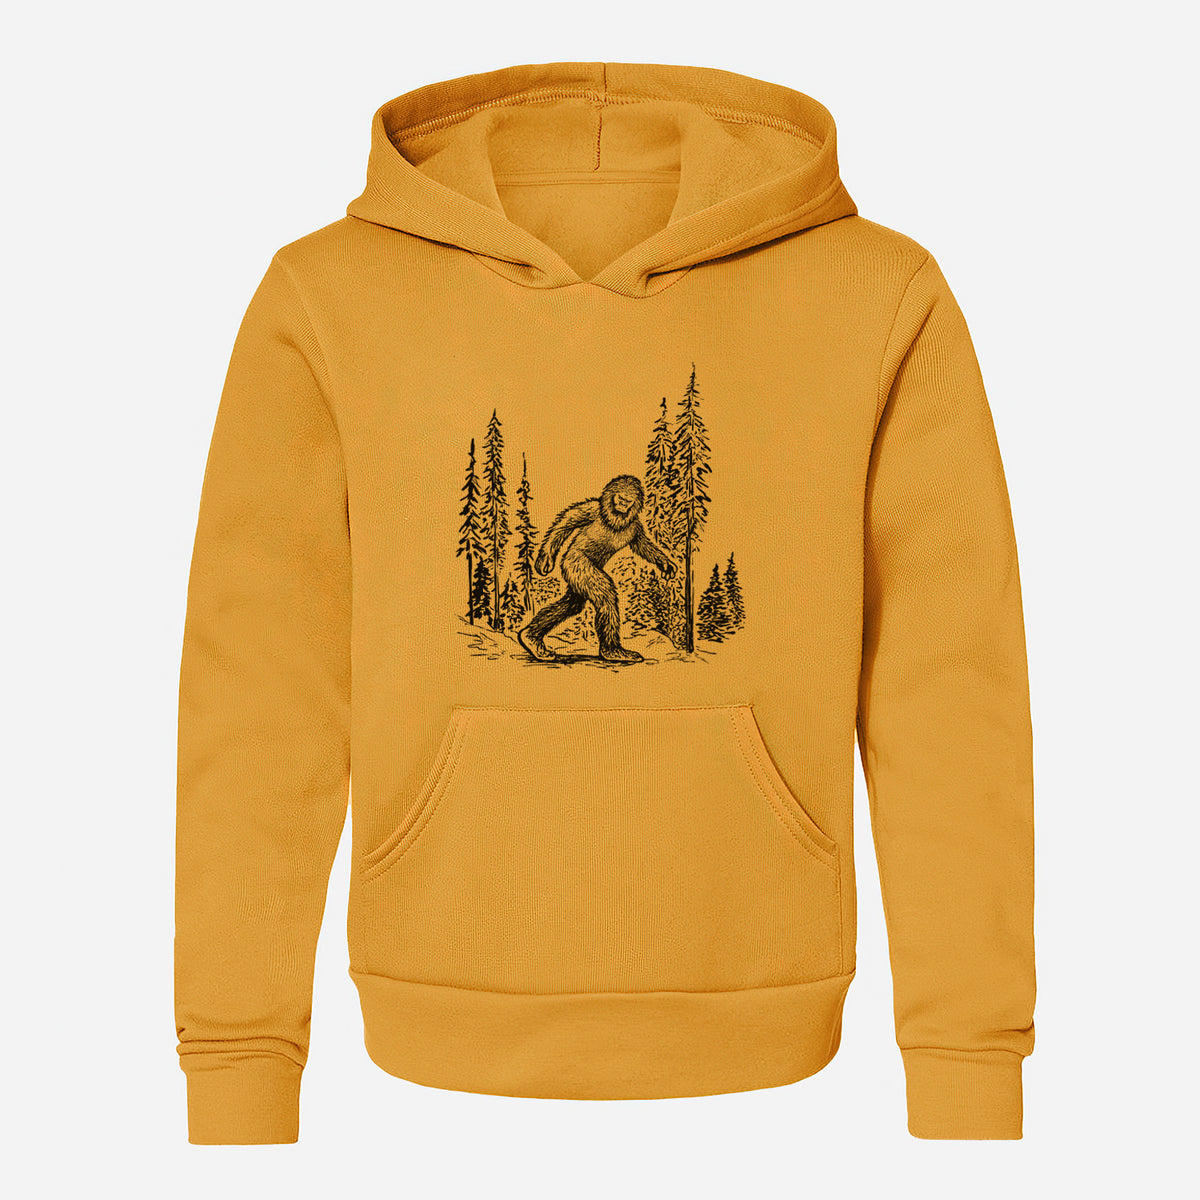 Bigfoot in the Woods - Youth Hoodie Sweatshirt